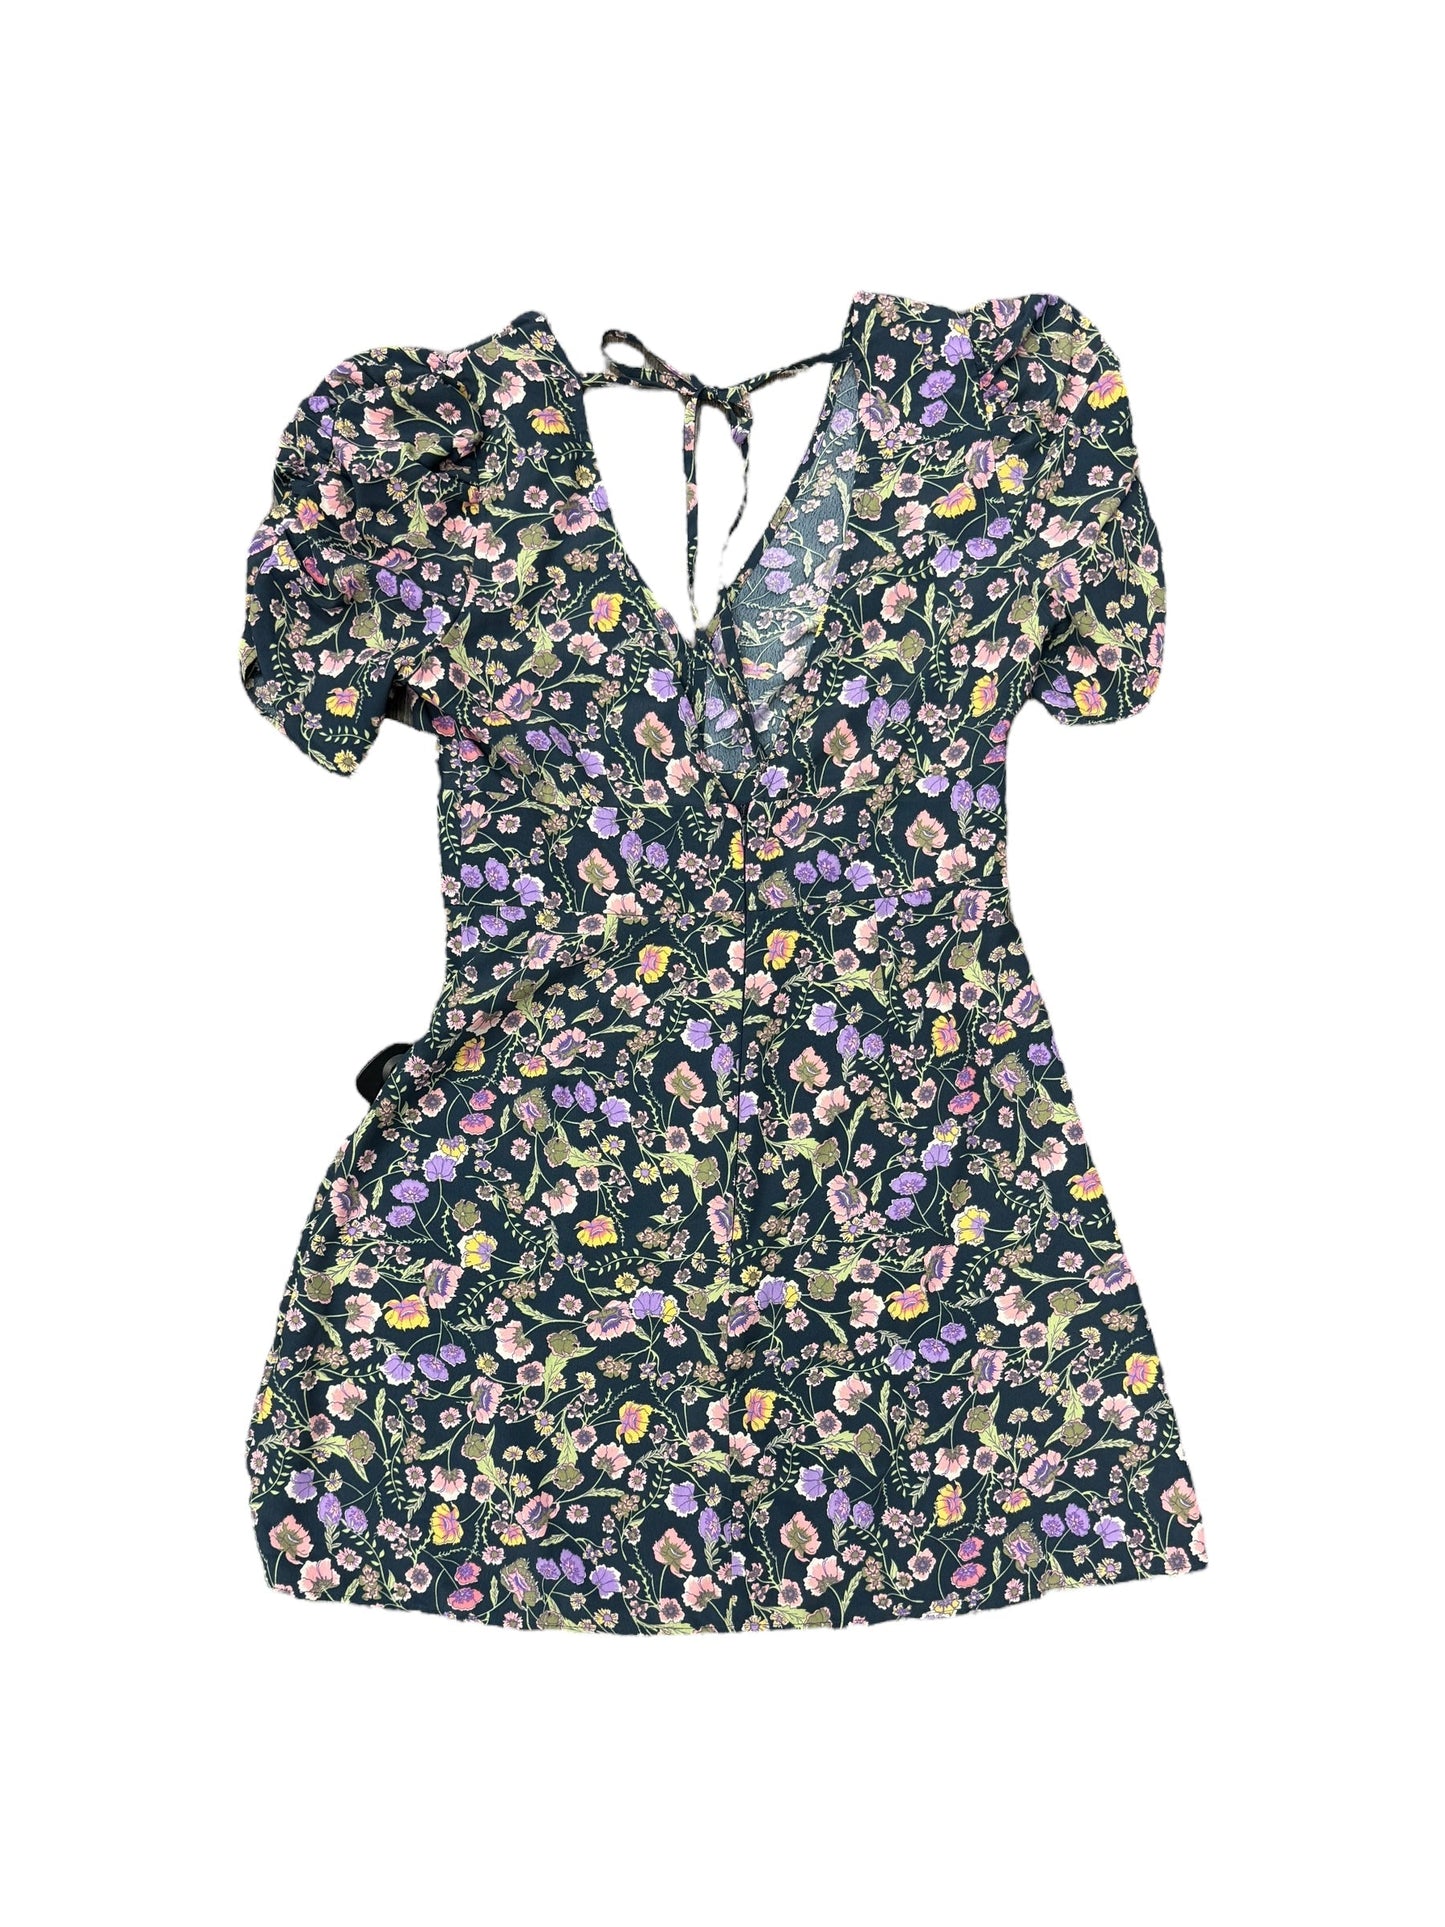 Floral Print Dress Casual Short Top Shop, Size 6